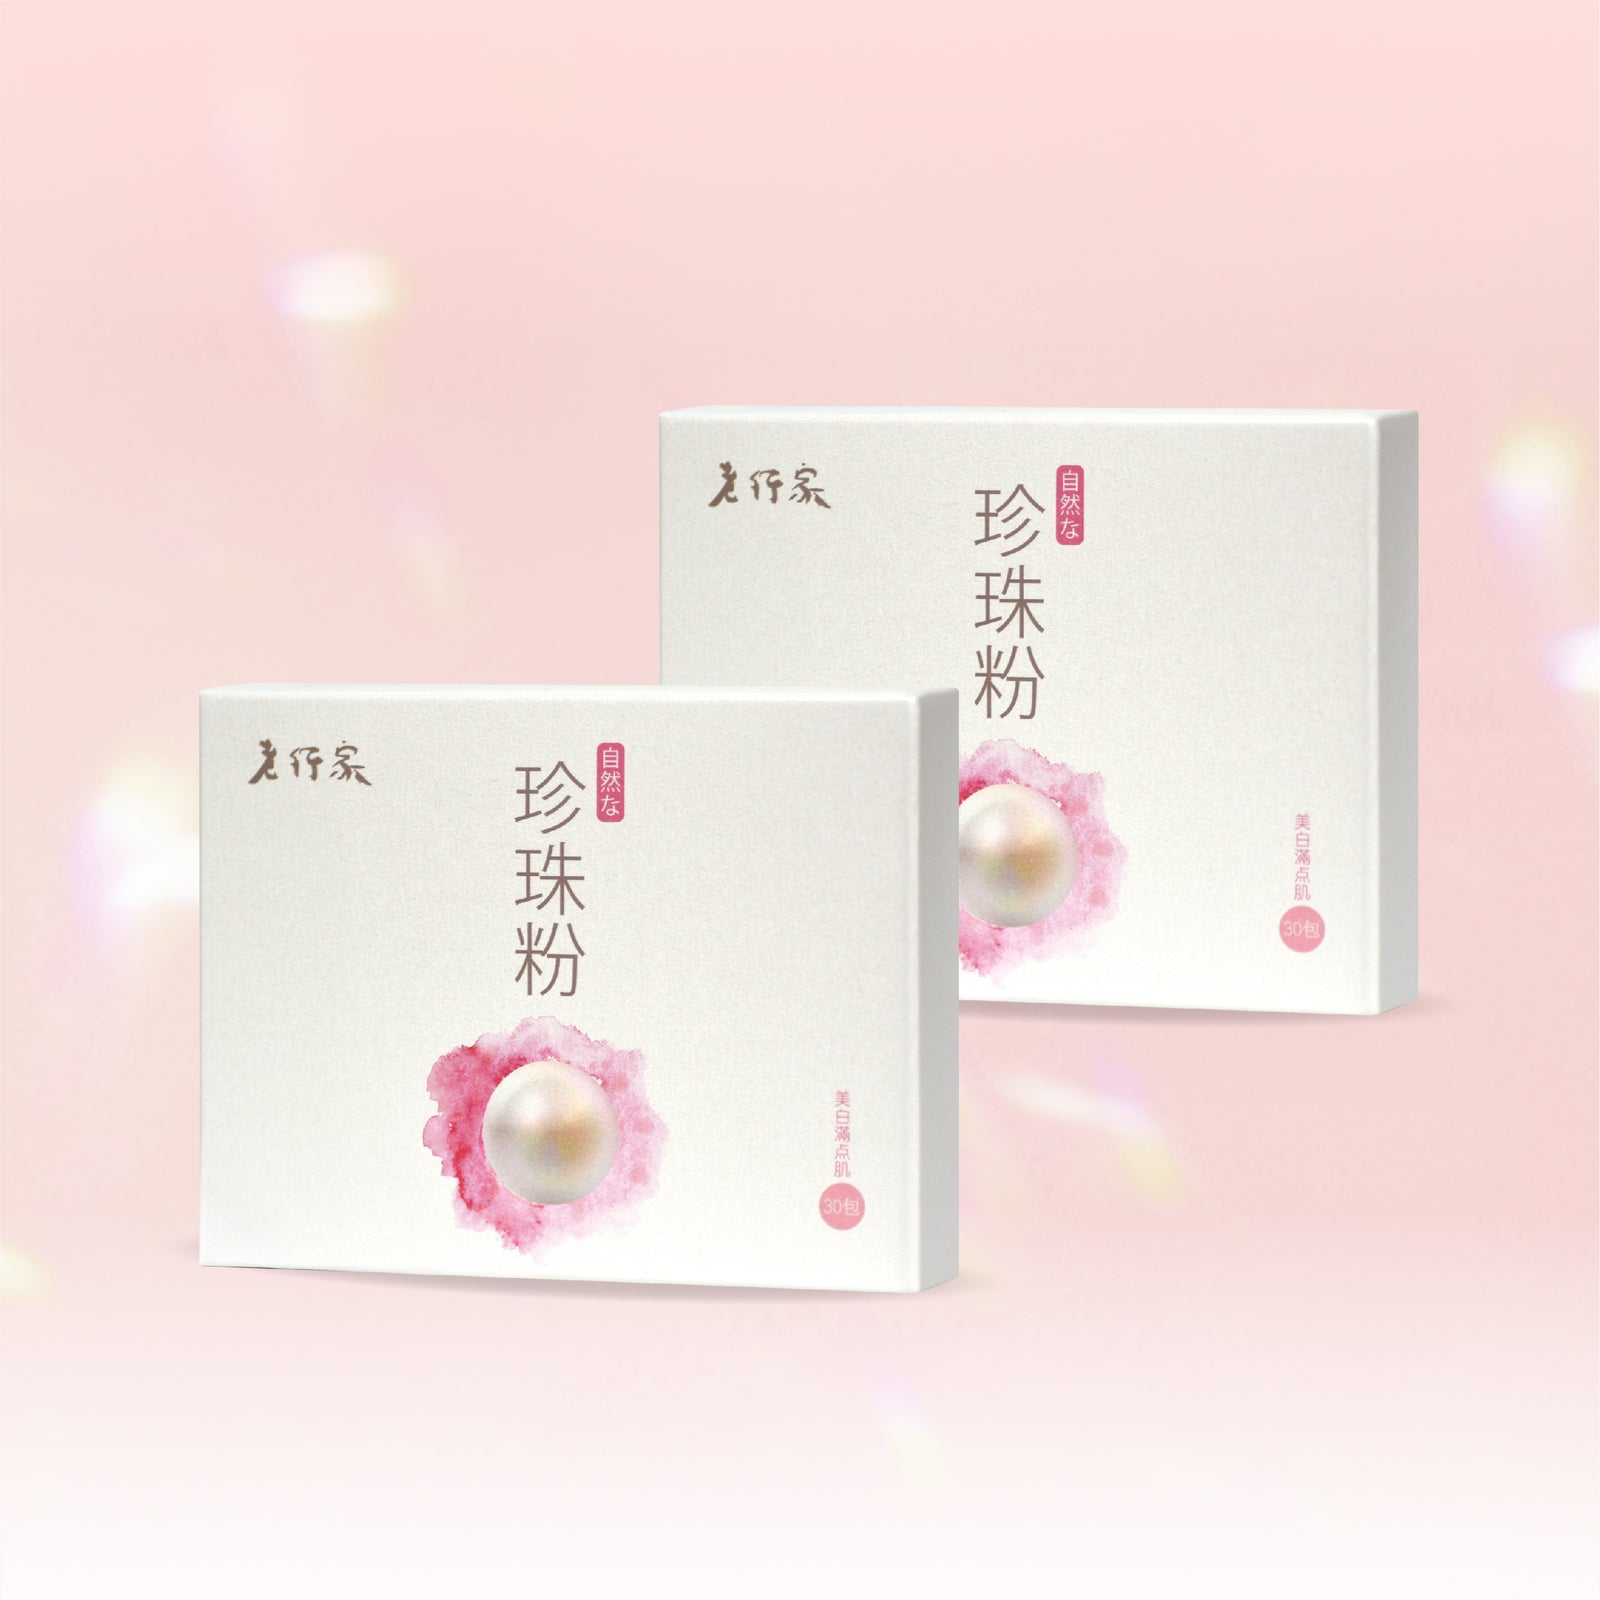 【30天體驗】純珍珠粉 (30包裝) 2盒